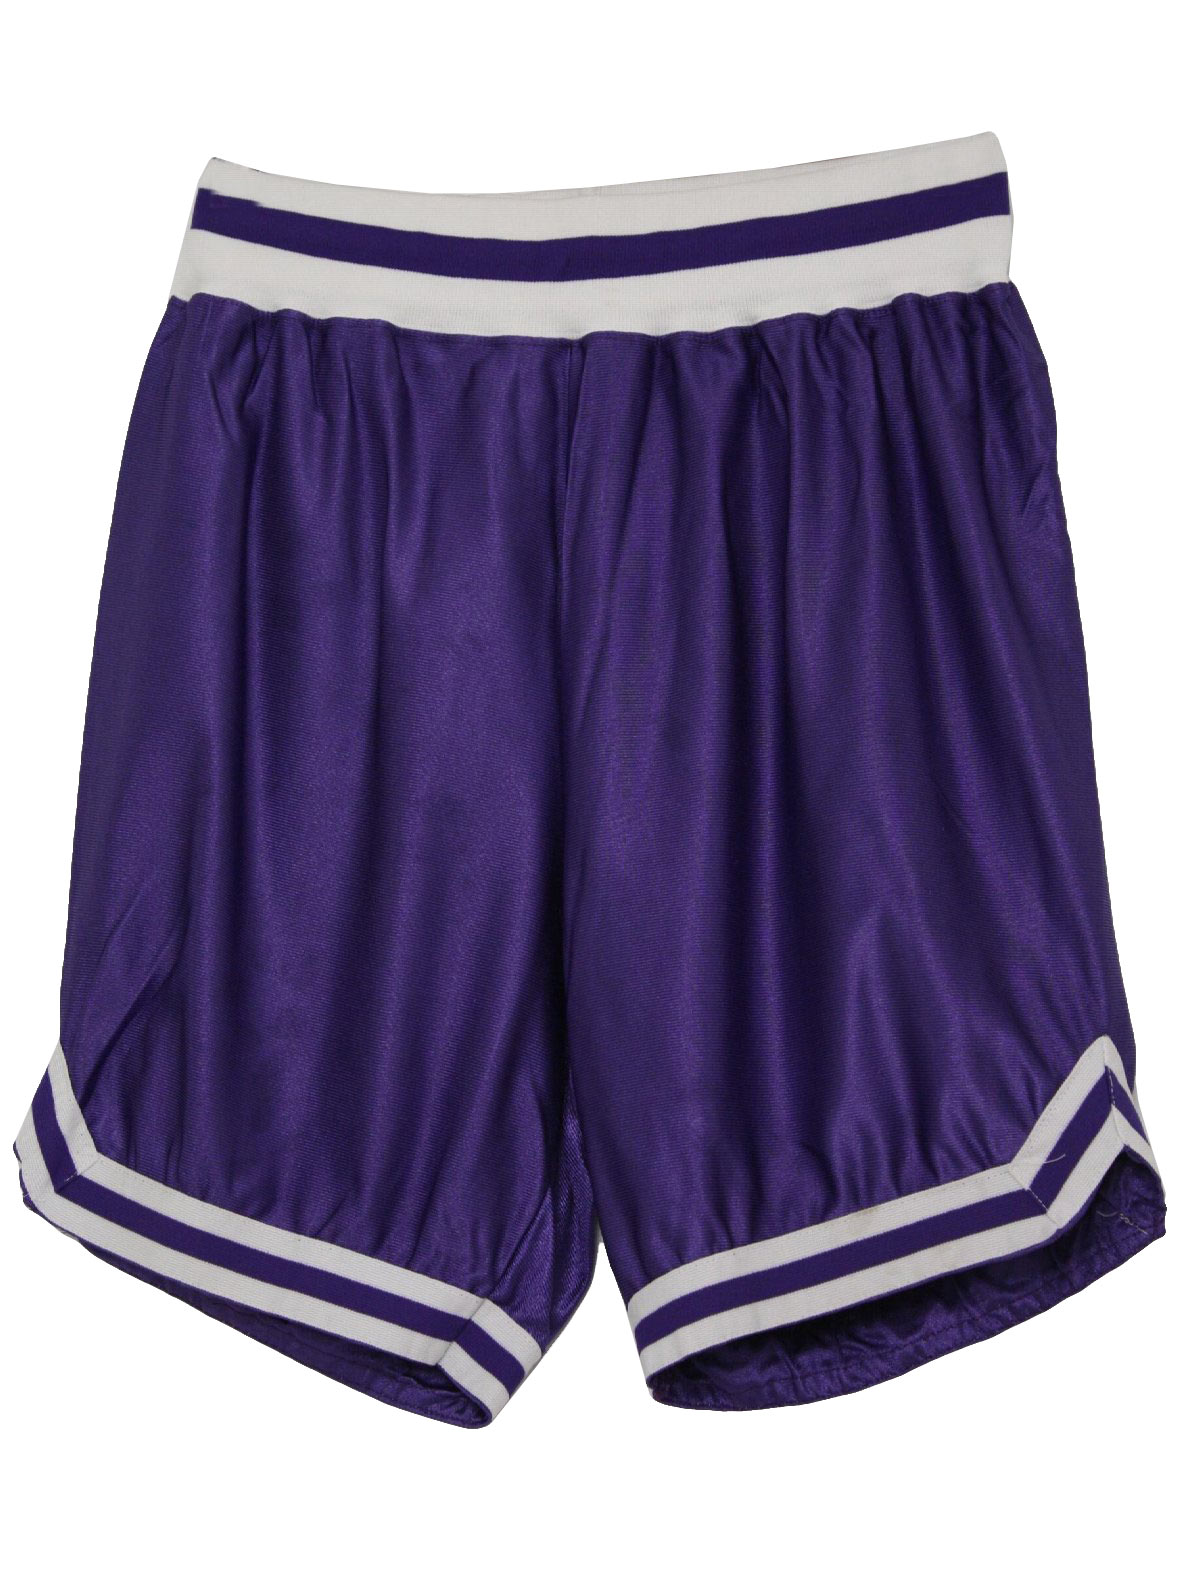 Vintage Care Label 80's Shorts: 80s -Care Label- Mens purple shiny ...